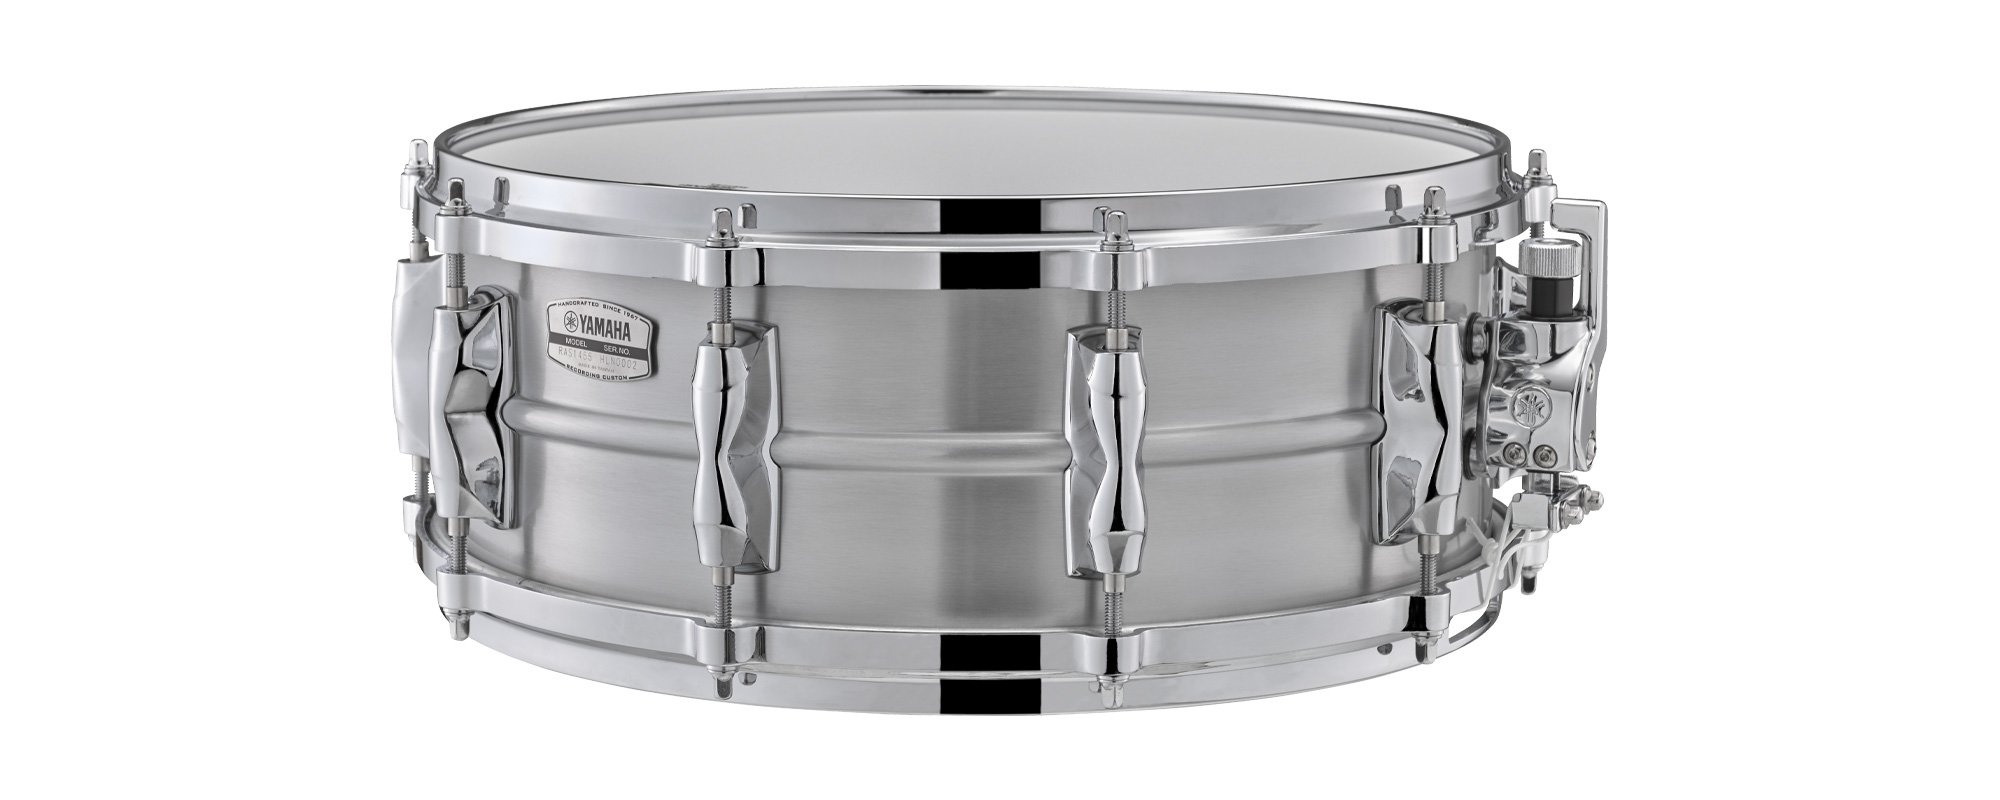 ヤマハ | Recording Custom Aluminum Snare Drums - スネアドラム - 概要